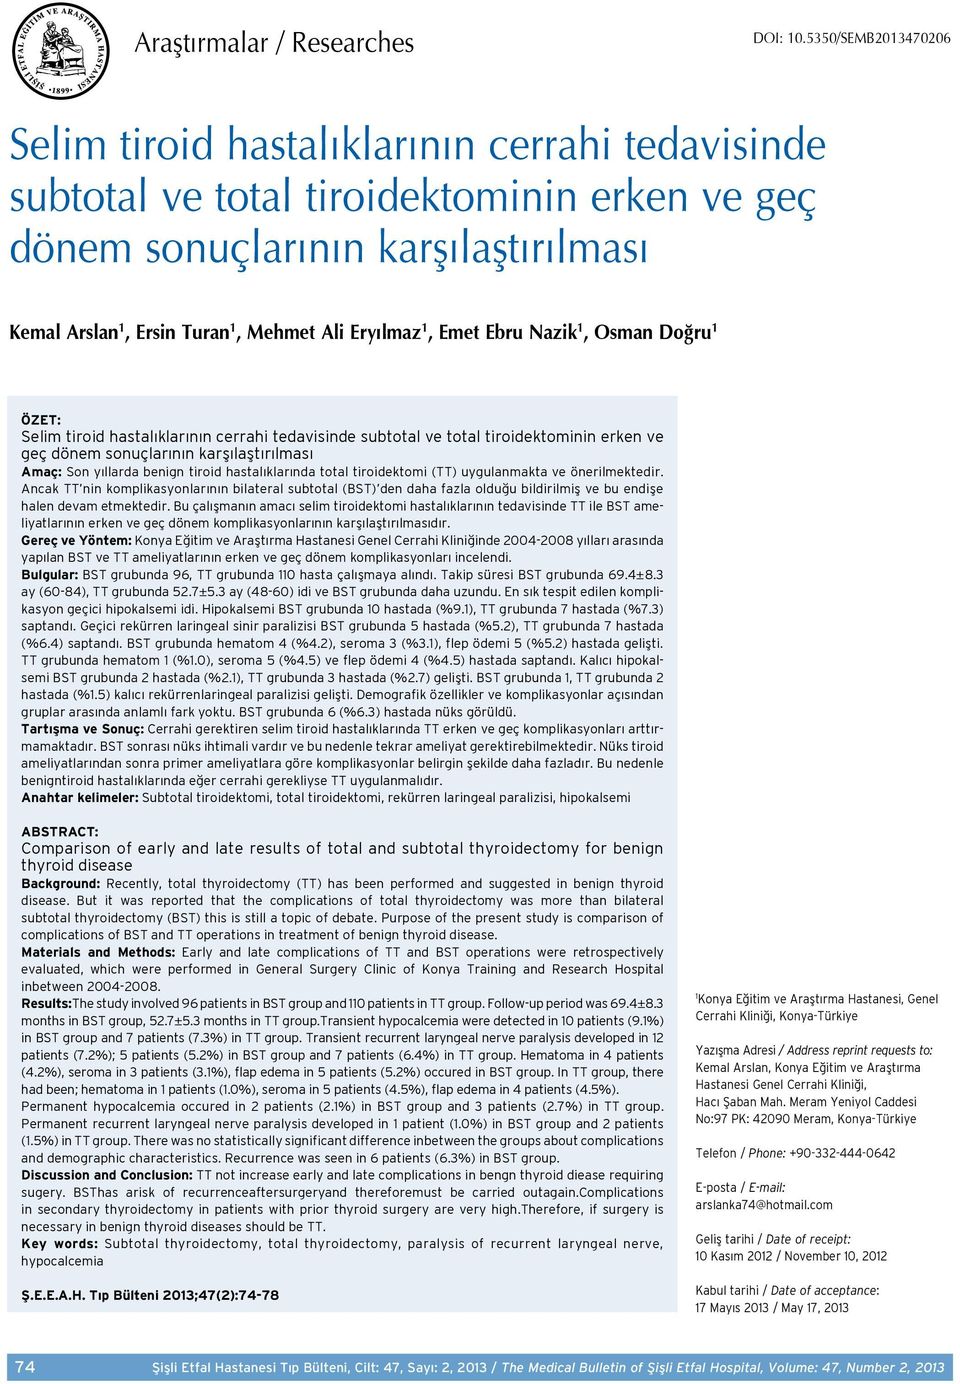 Eryılmaz 1, Emet Ebru Nazik 1, Osman Doğru 1 ÖZET: Selim tiroid hastalıklarının cerrahi tedavisinde subtotal ve total tiroidektominin erken ve geç dönem sonuçlarının karşılaştırılması Amaç: Son